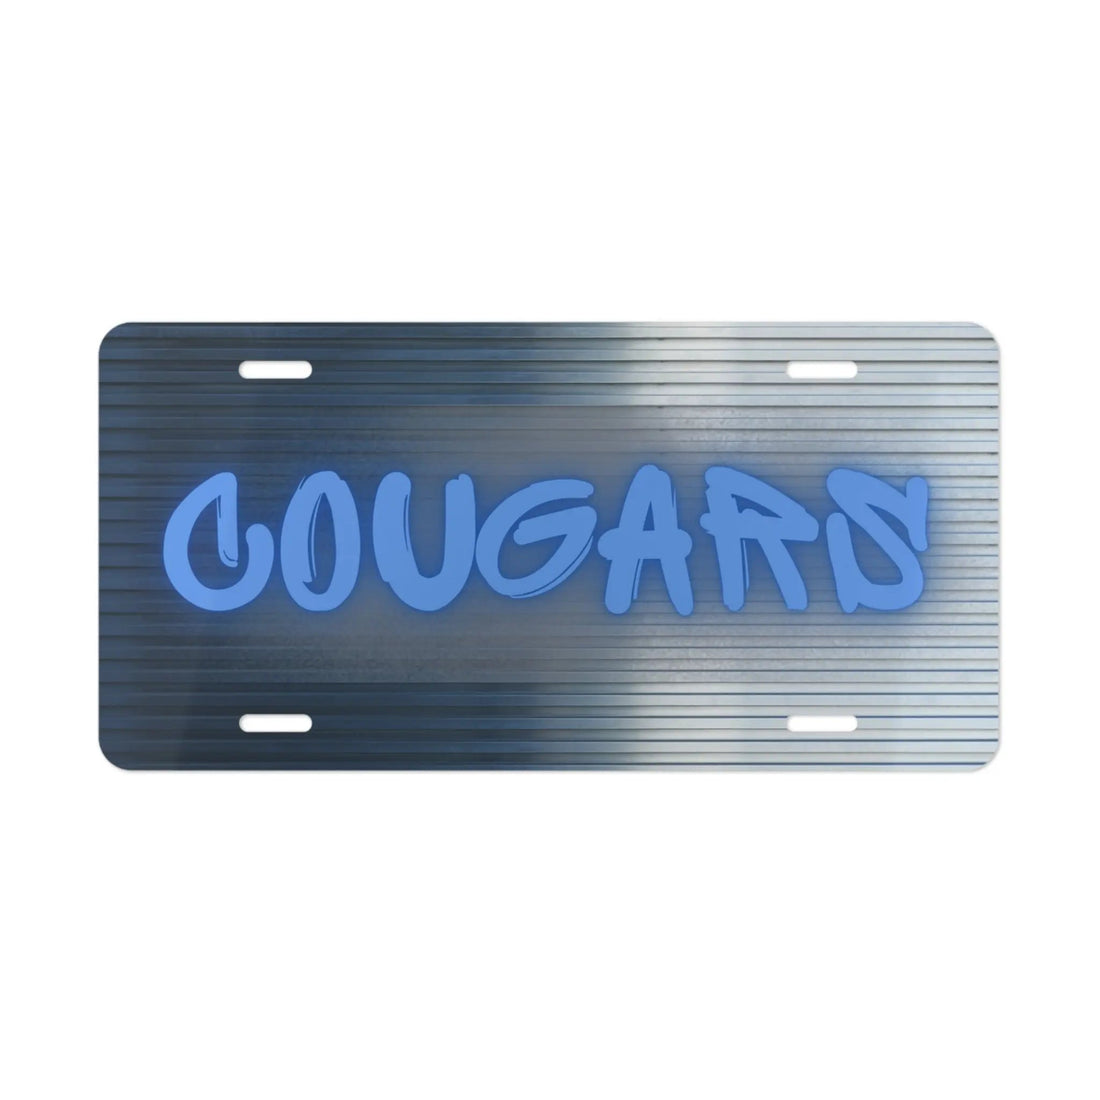 Cougar Graffiti License Plate - Accessories - Positively Sassy - Cougar Graffiti License Plate